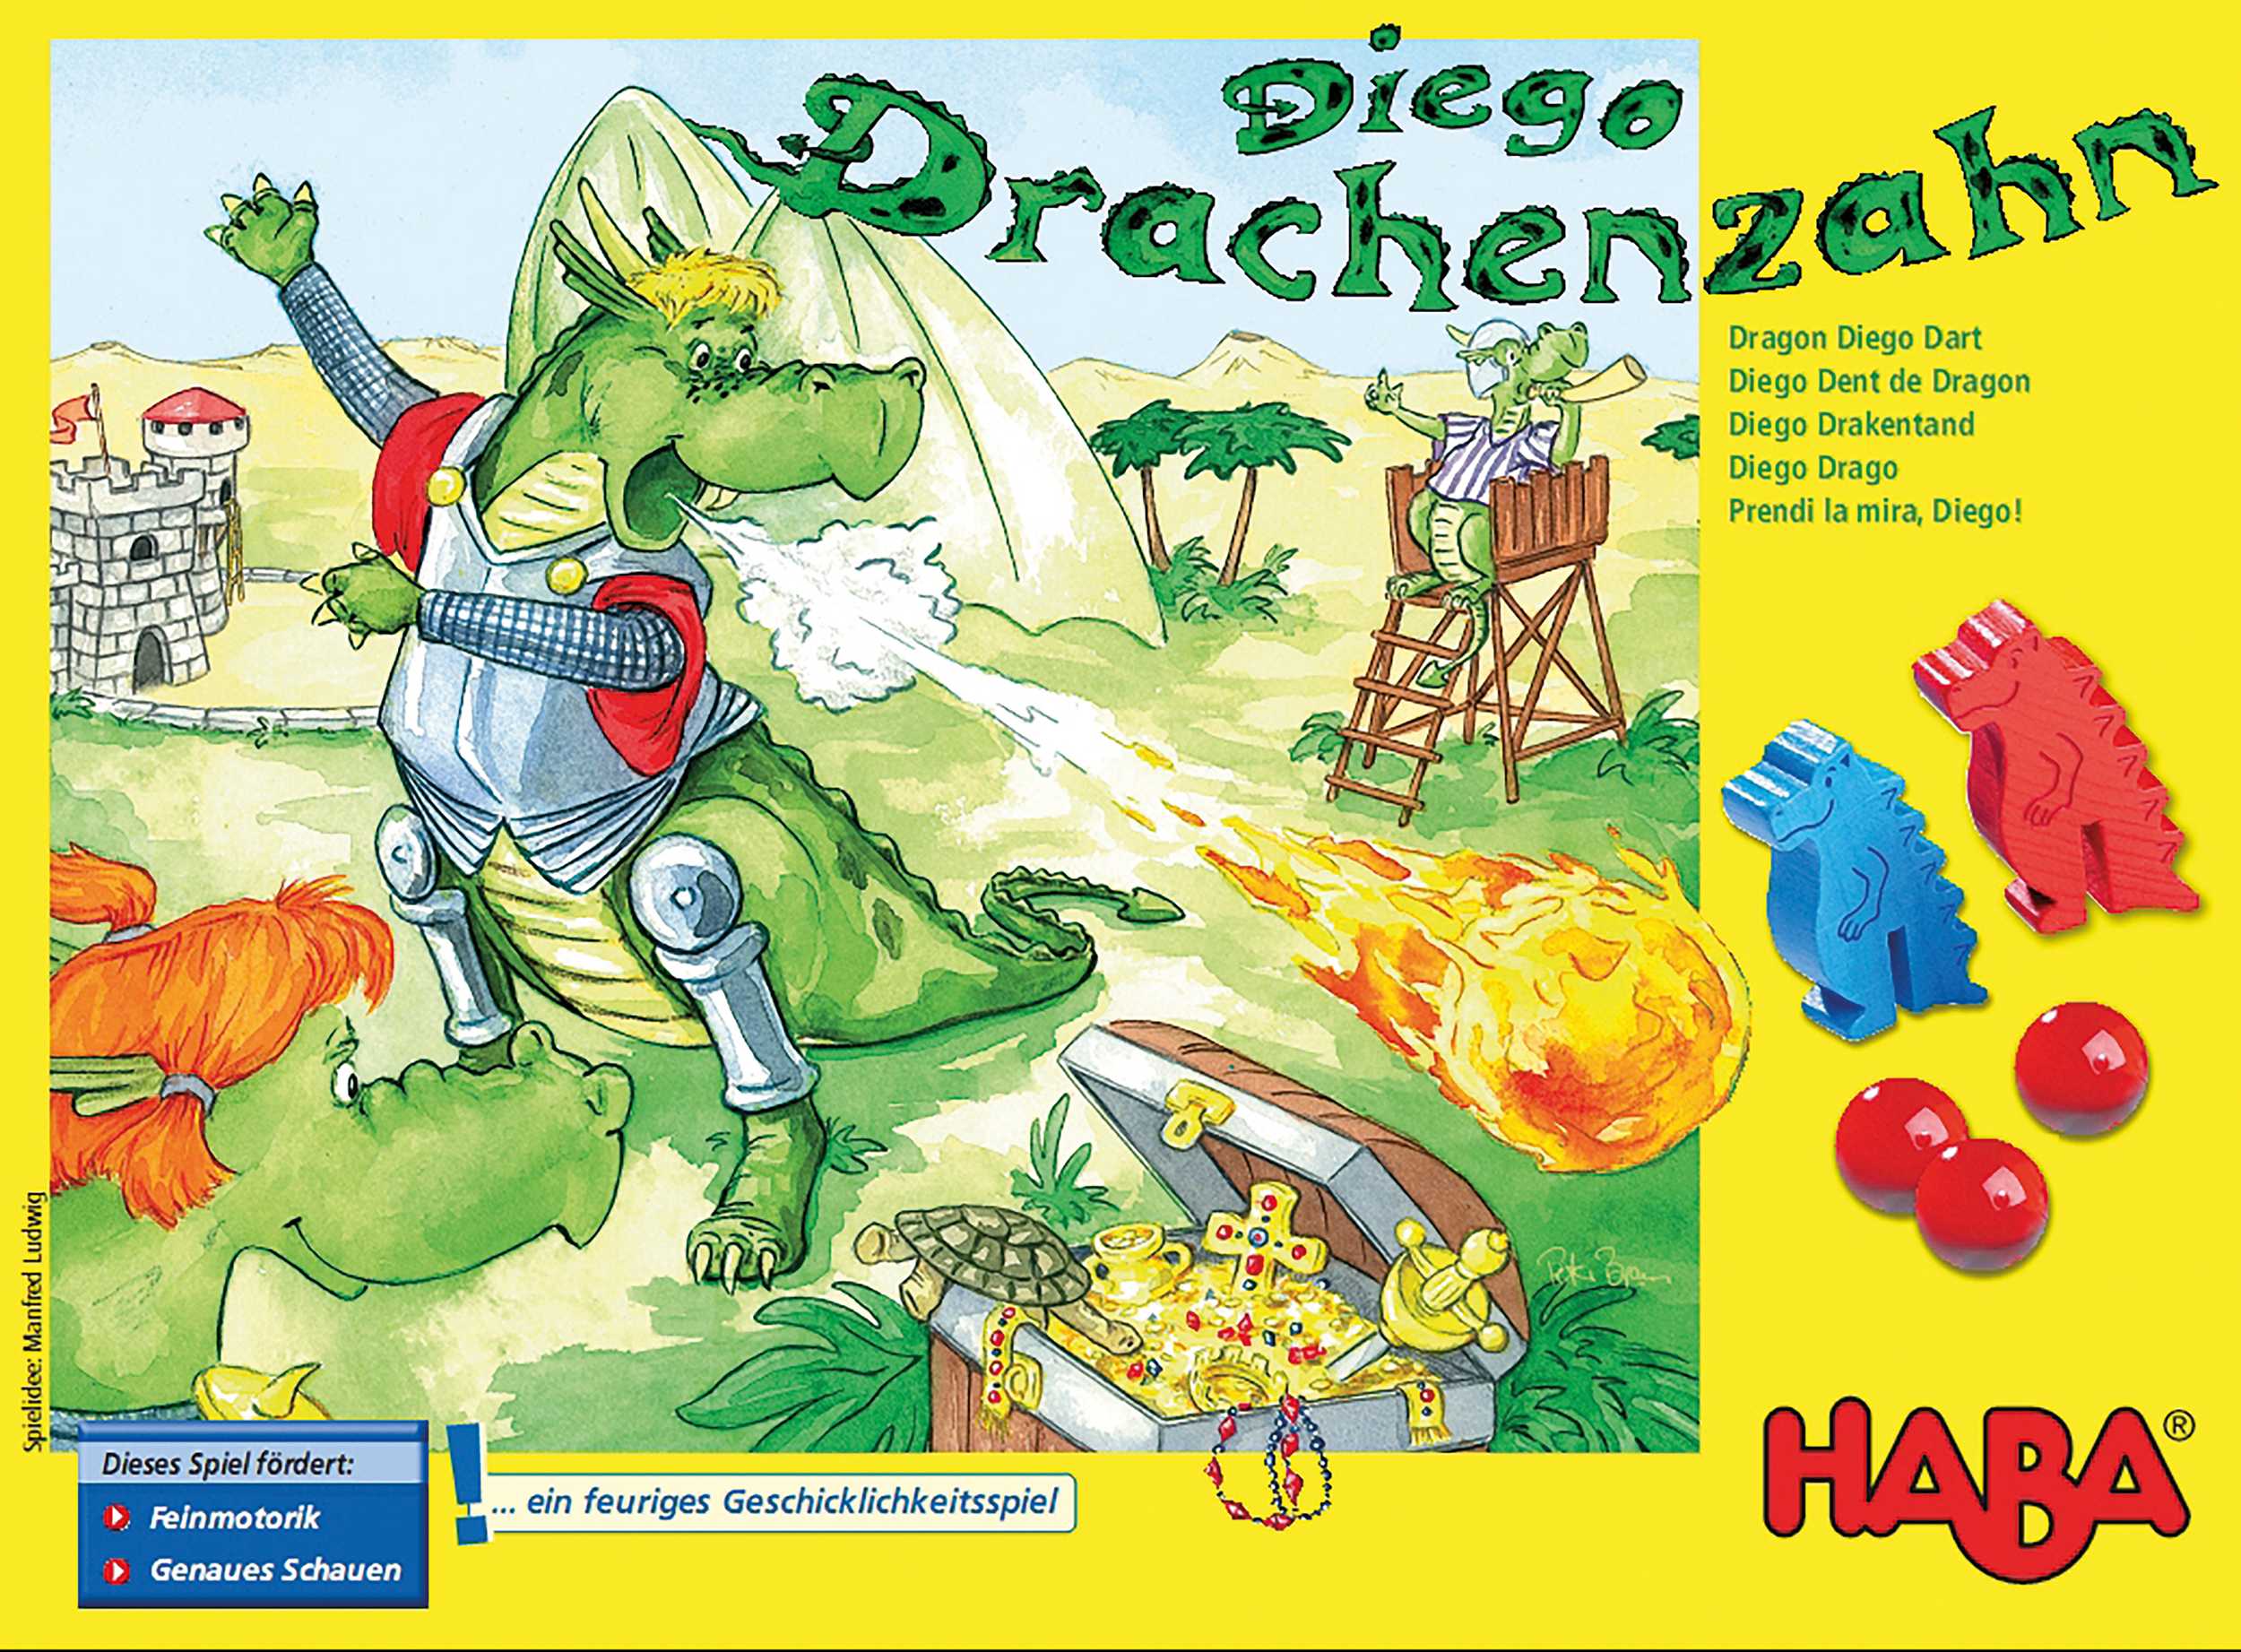 Diego Drachenzahn